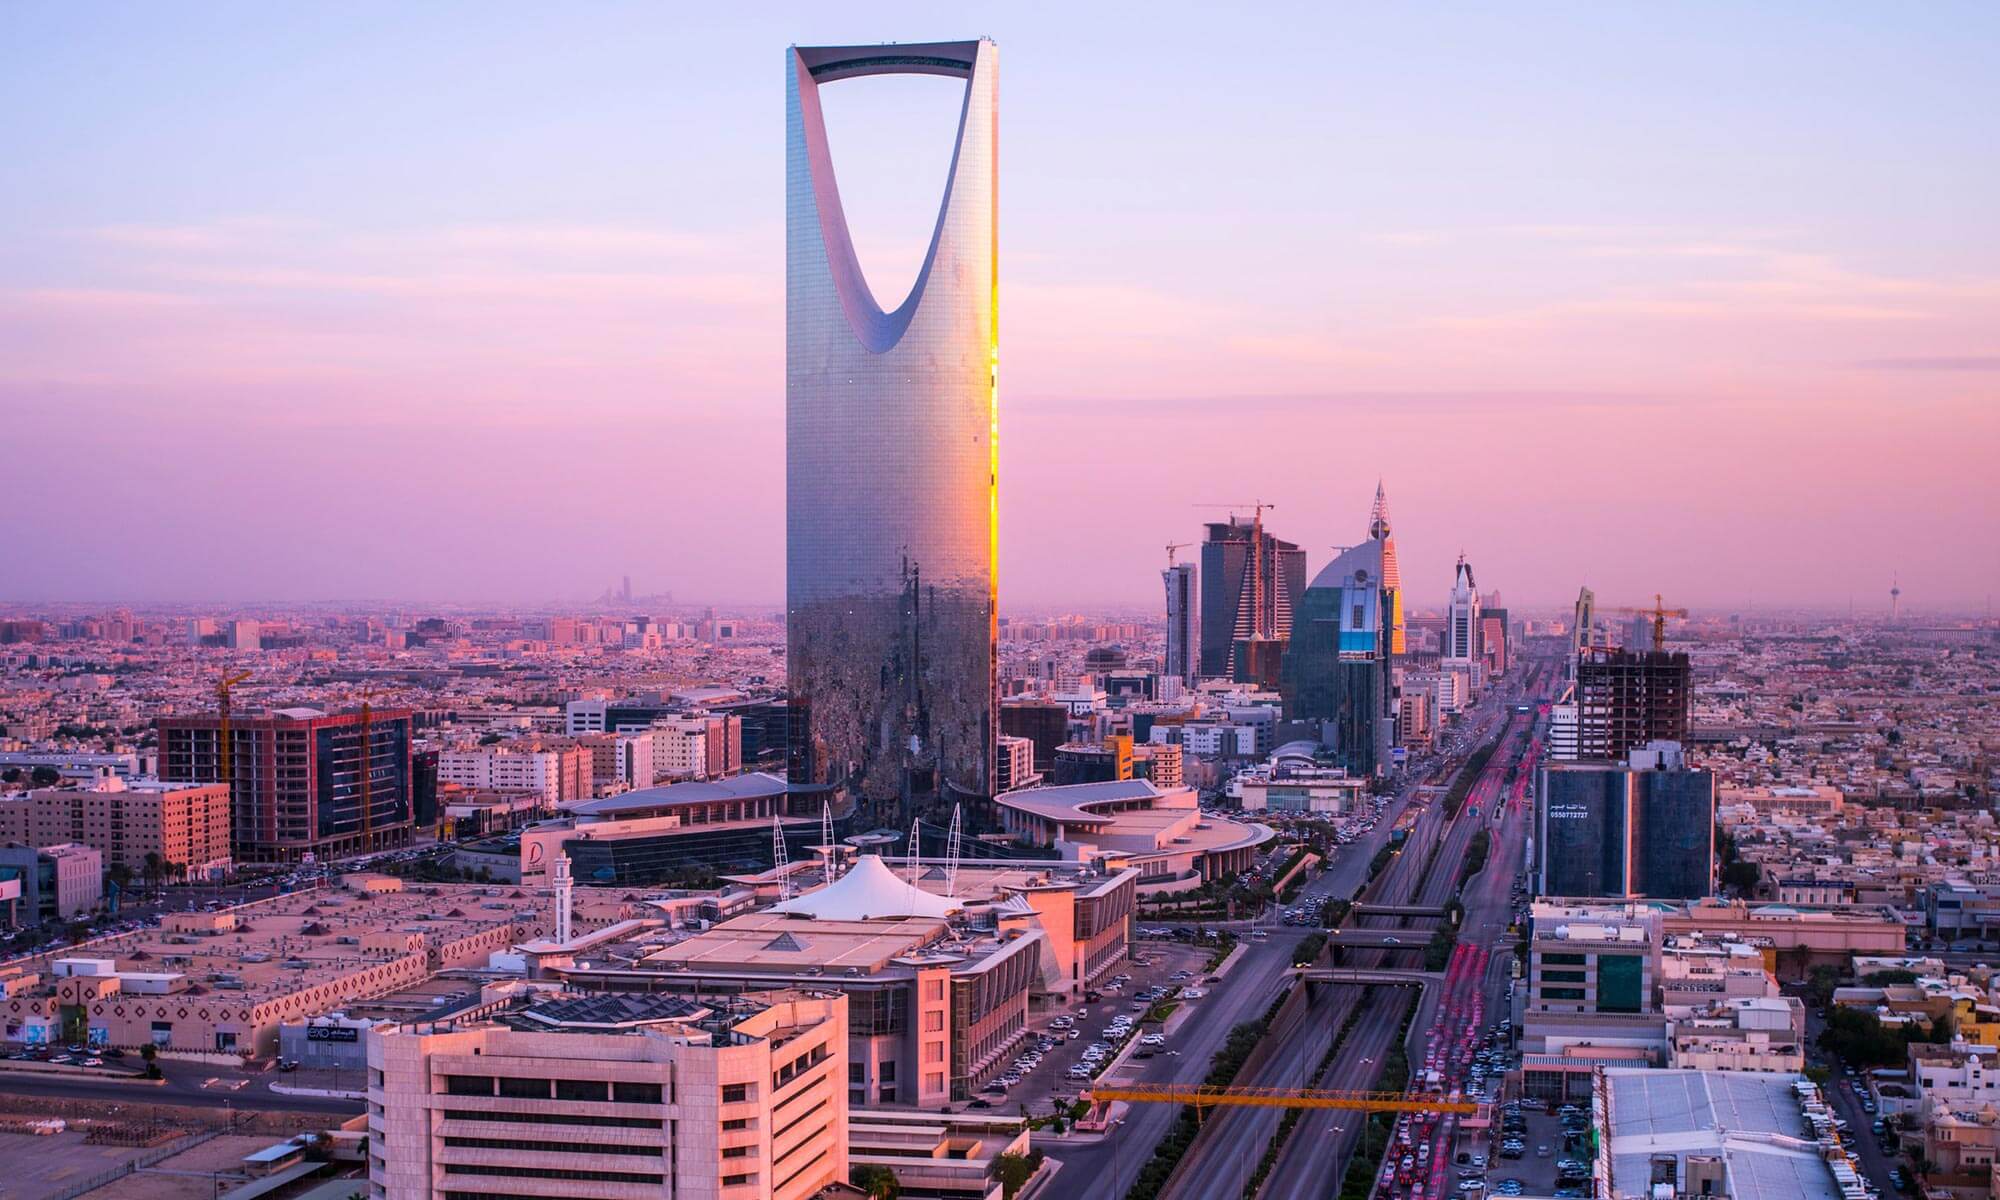 The 99-story Kingdom Centre in Saudi Arabia